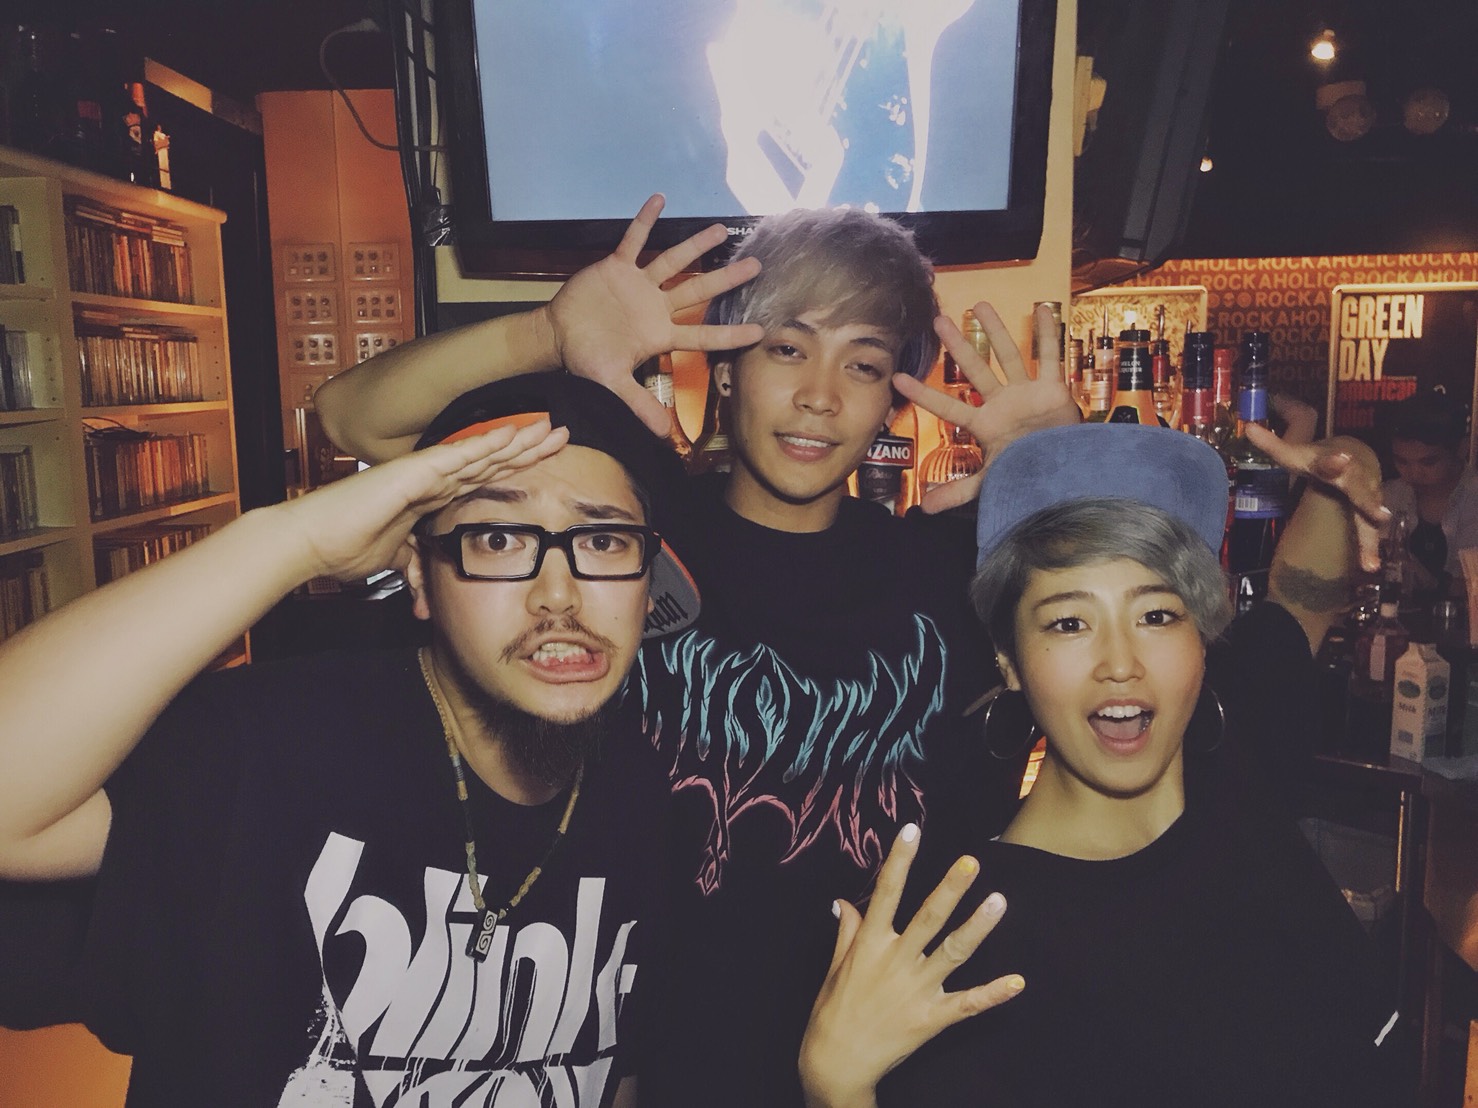 https://bar-rockaholic.jp/shibuya/blog/S__12402697.jpg